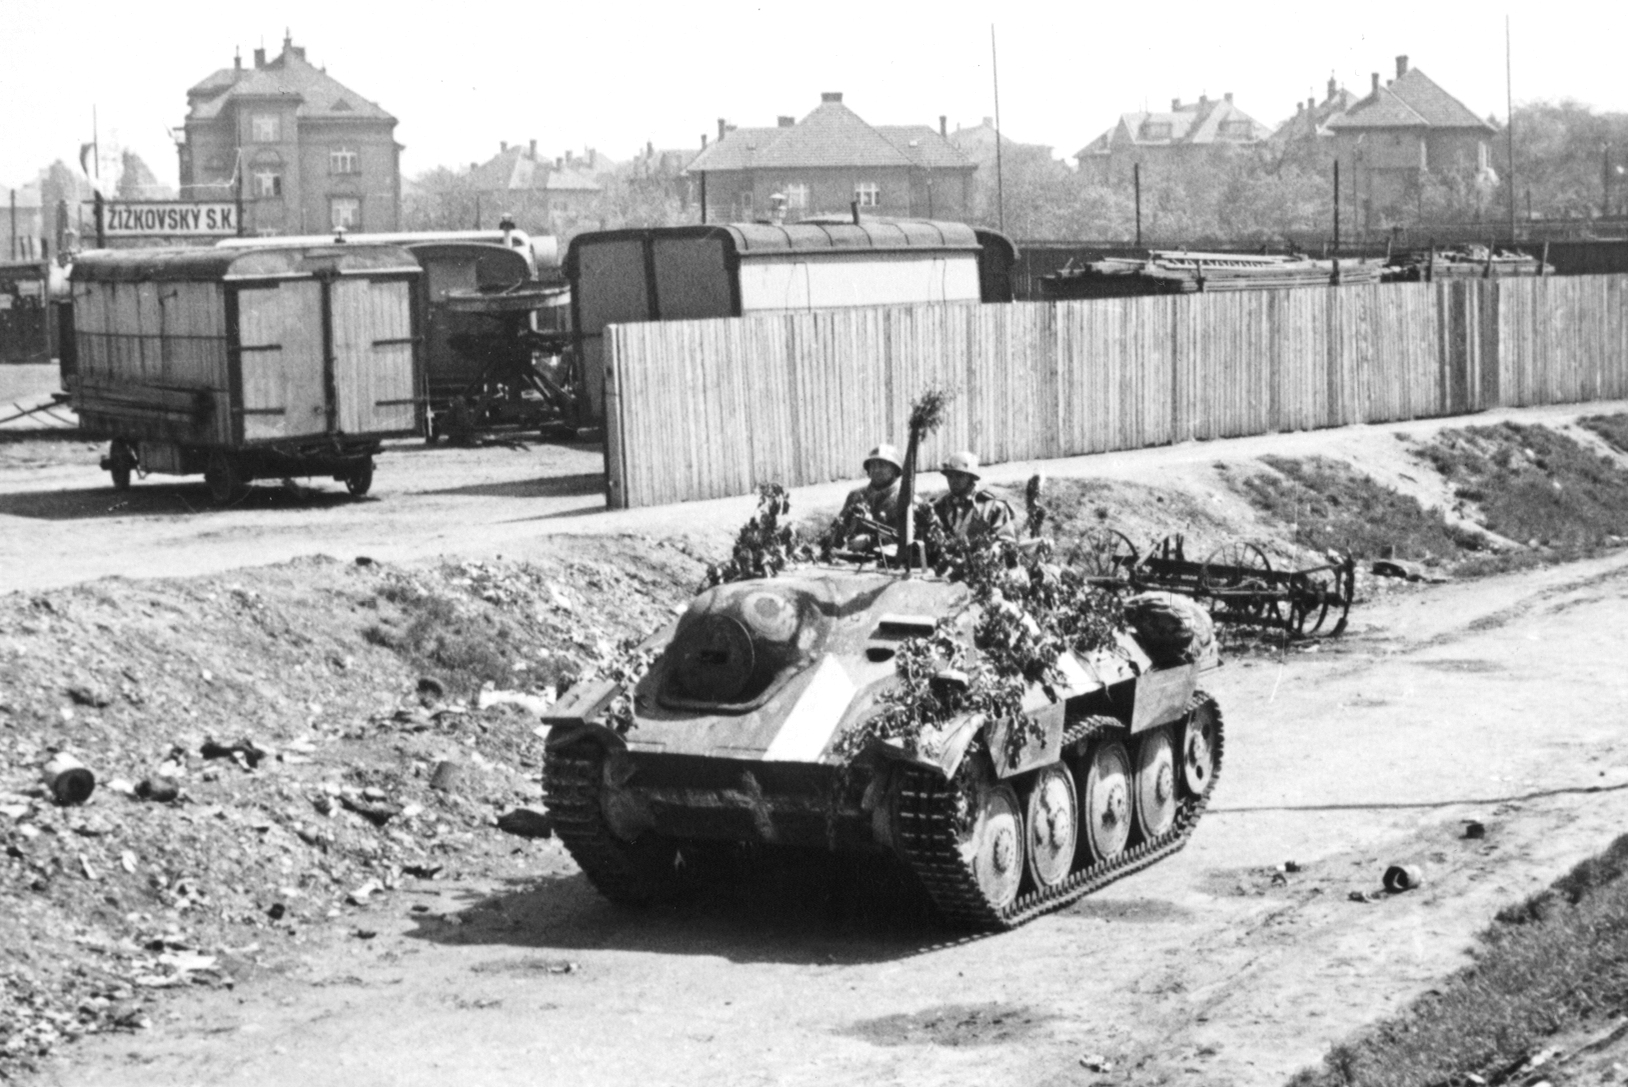 Bojové vozidlo Hetzer během Pražského povstání, květen 1945